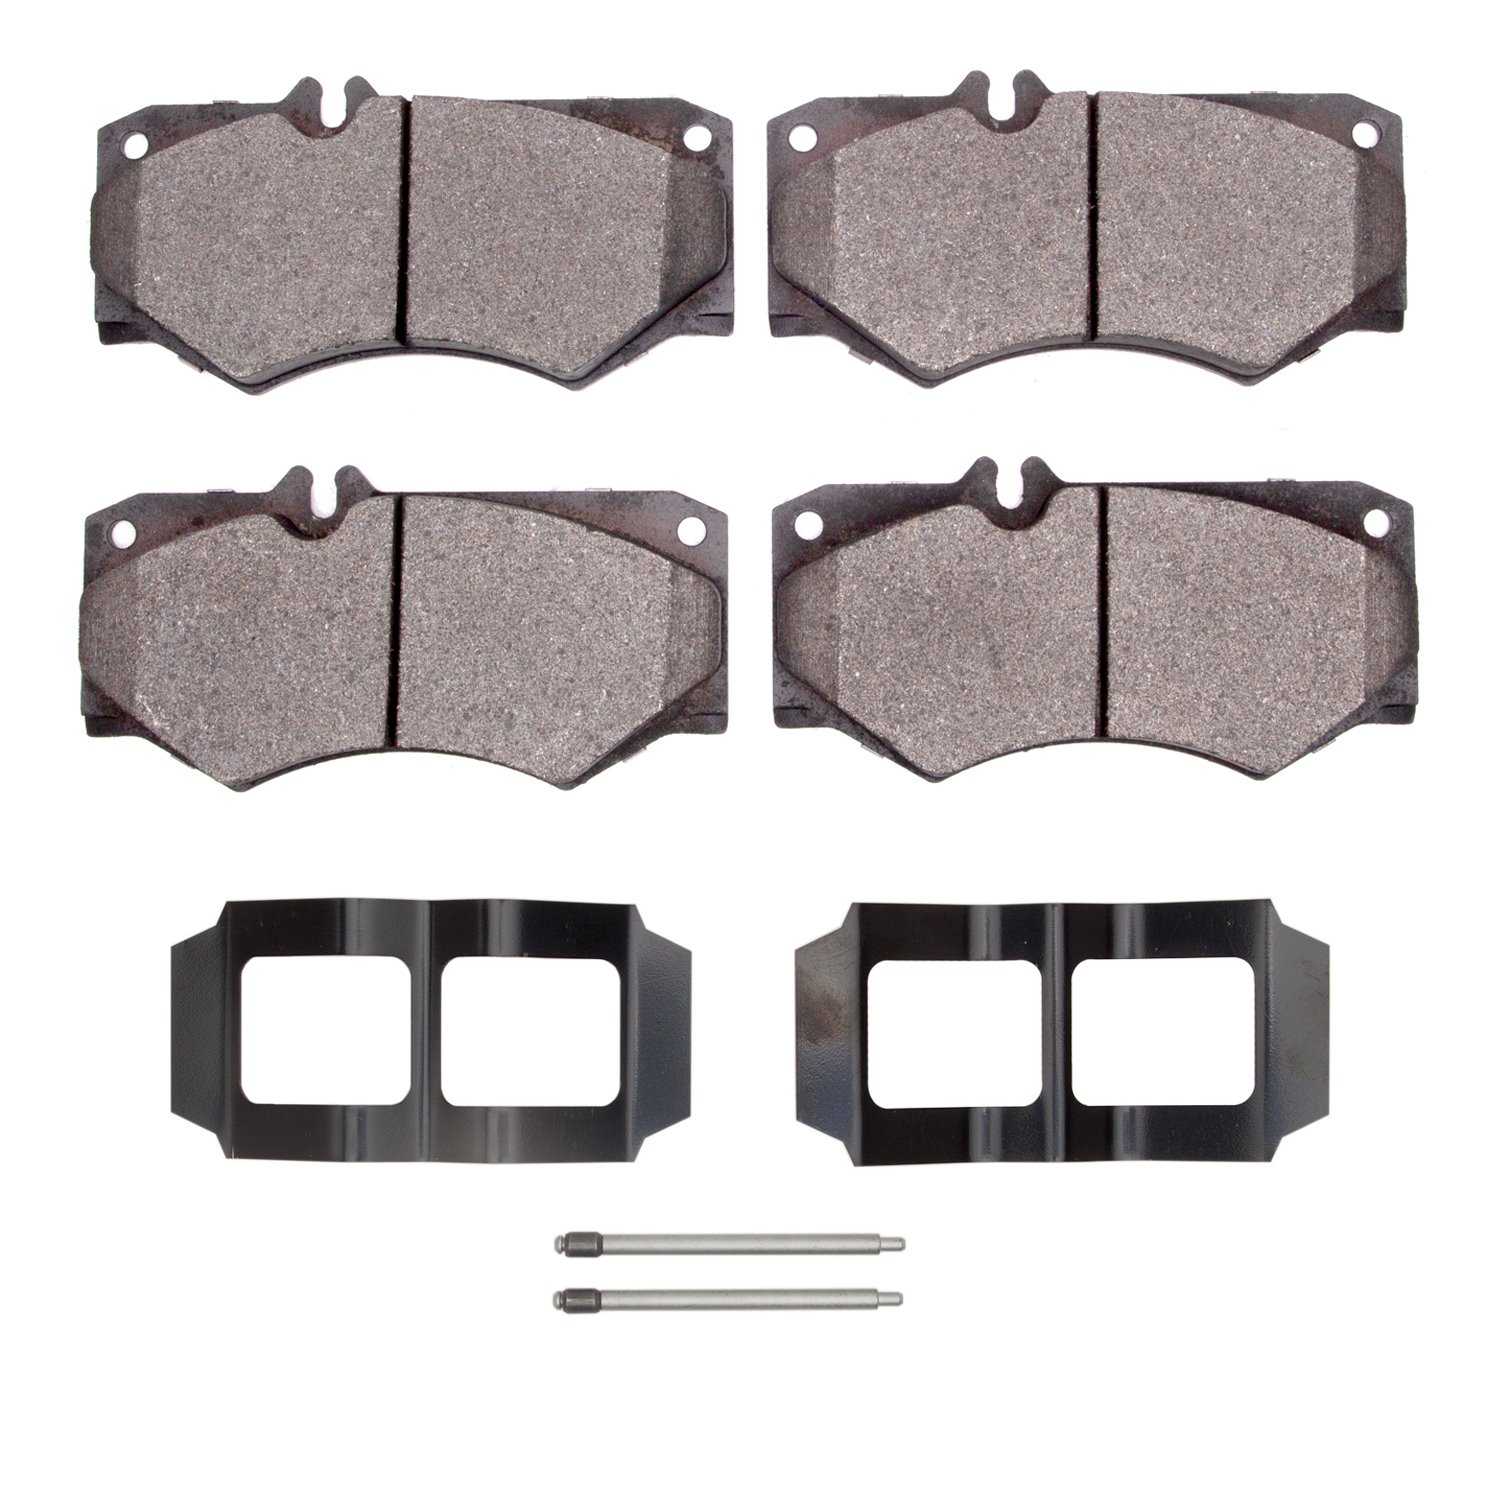 1311-0927-01 3000-Series Semi-Metallic Brake Pads & Hardware Kit, 2002-2018 Mercedes-Benz, Position: Front